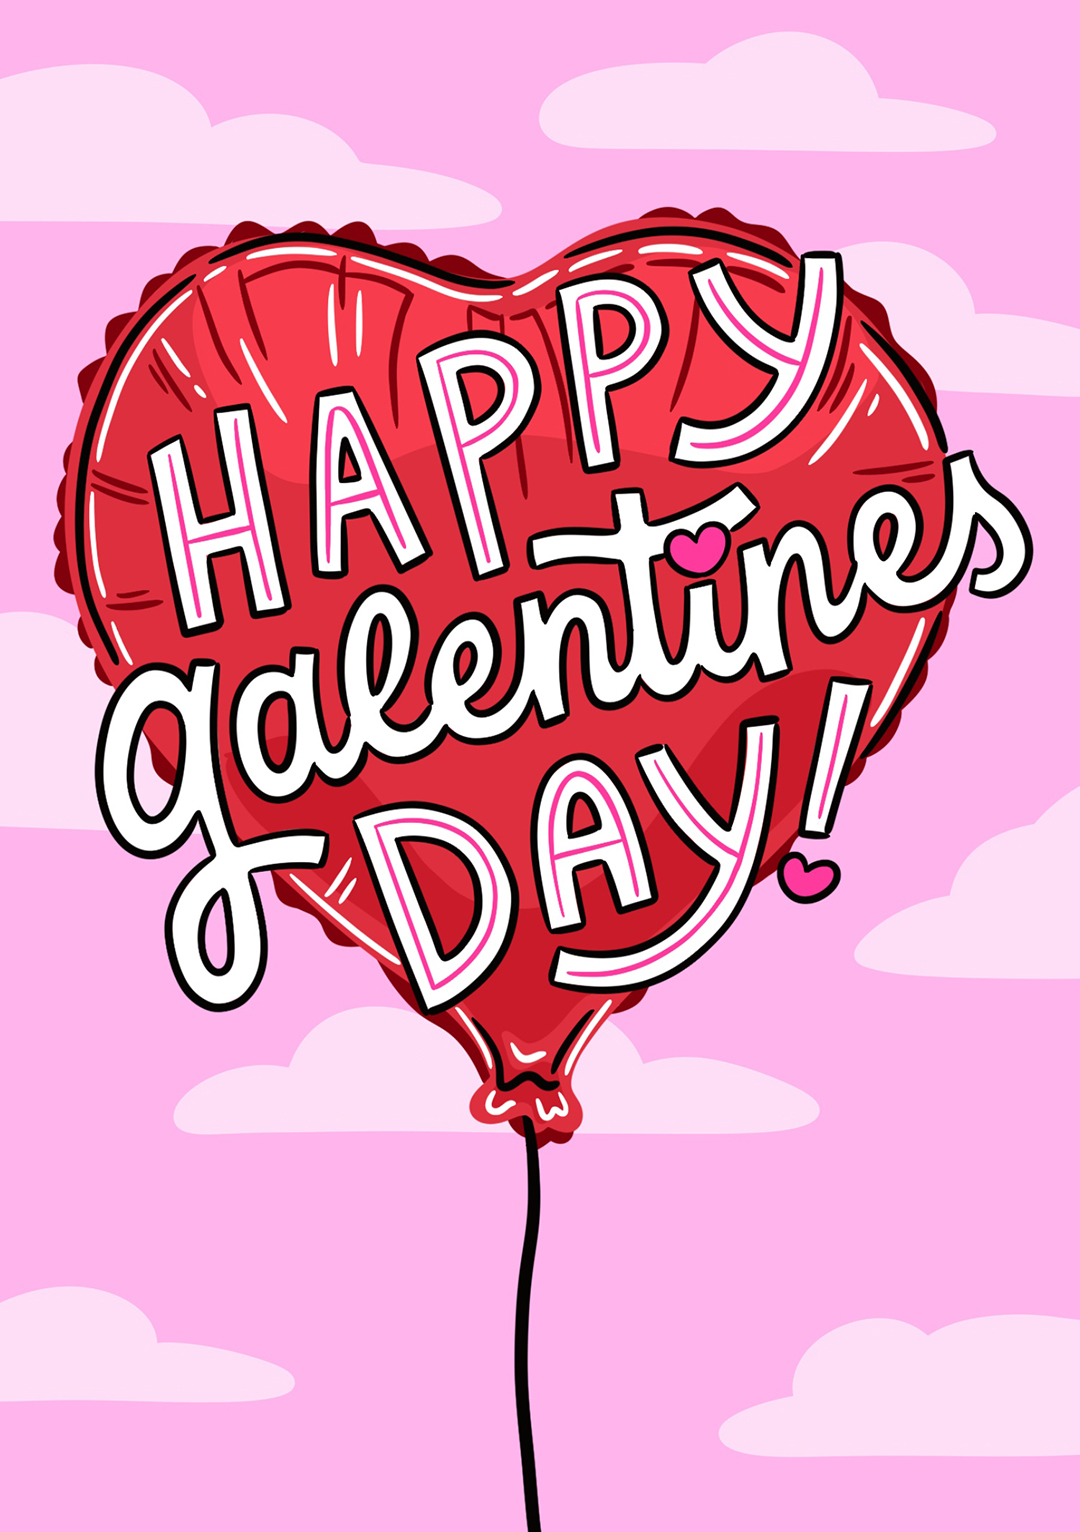 Galentines Love Balloon - Valentine's Day Card